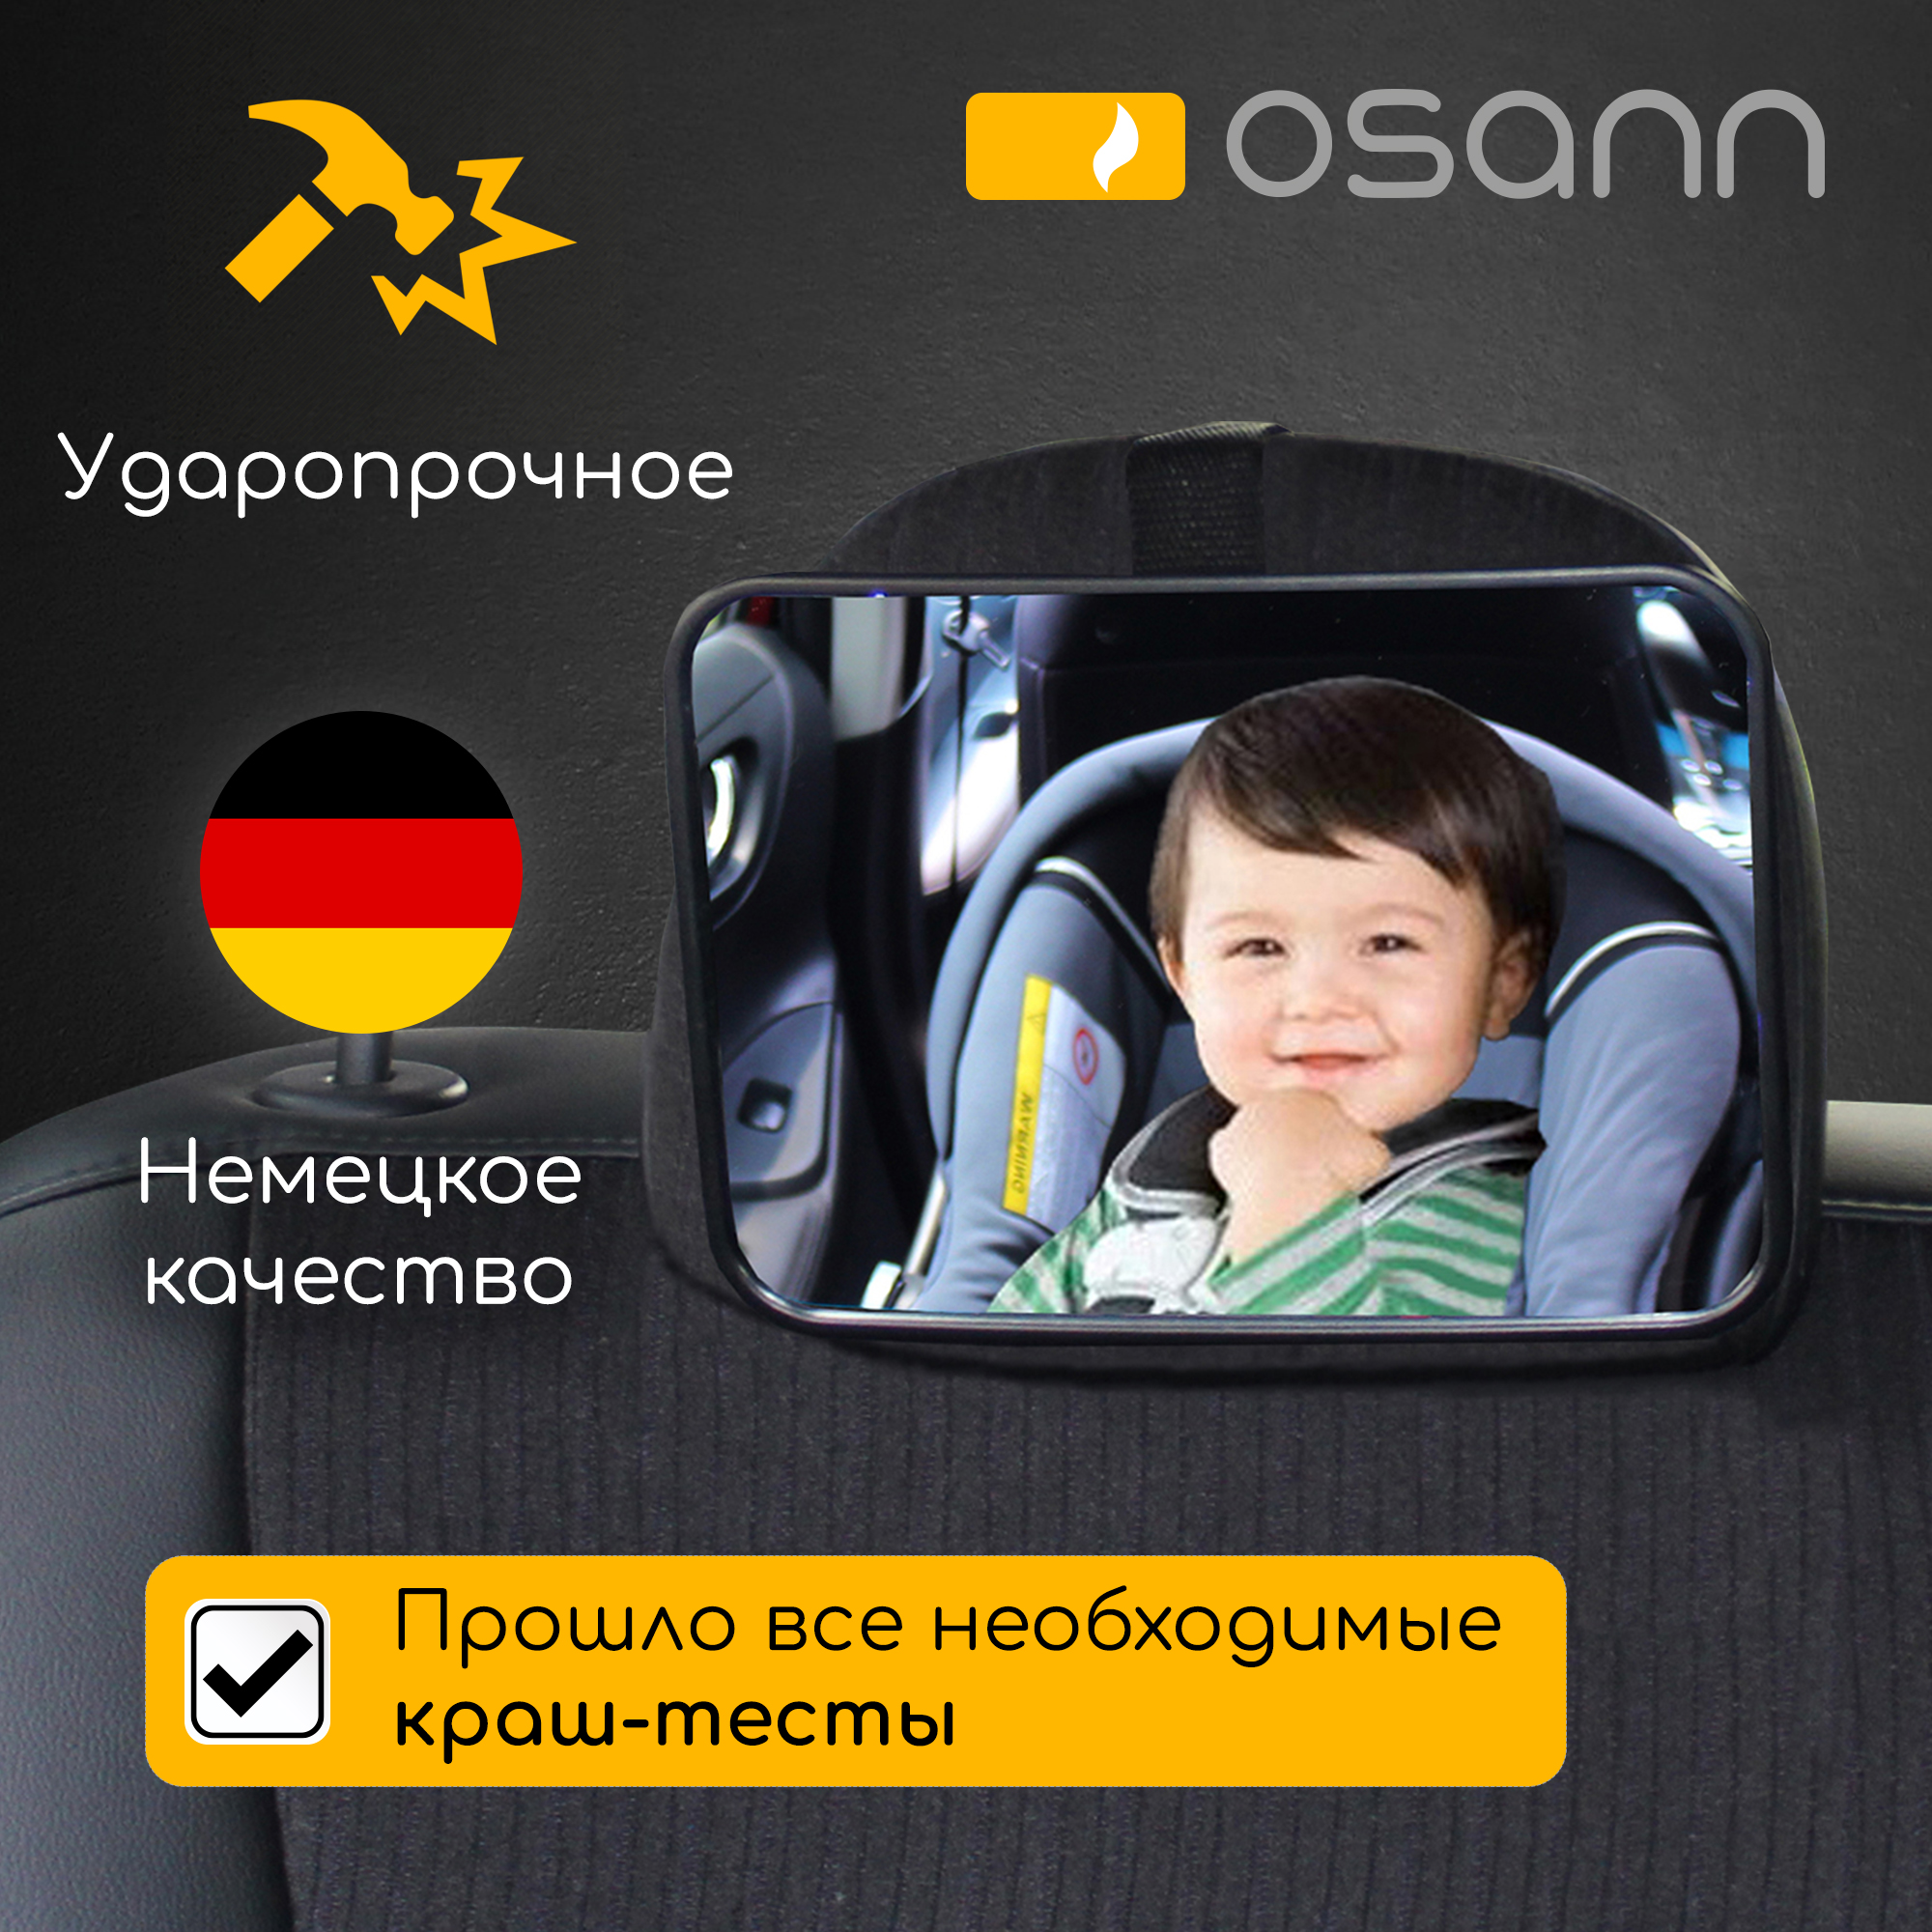 Зеркало Osann для контроля за ребенком в автомобиле - фото 2